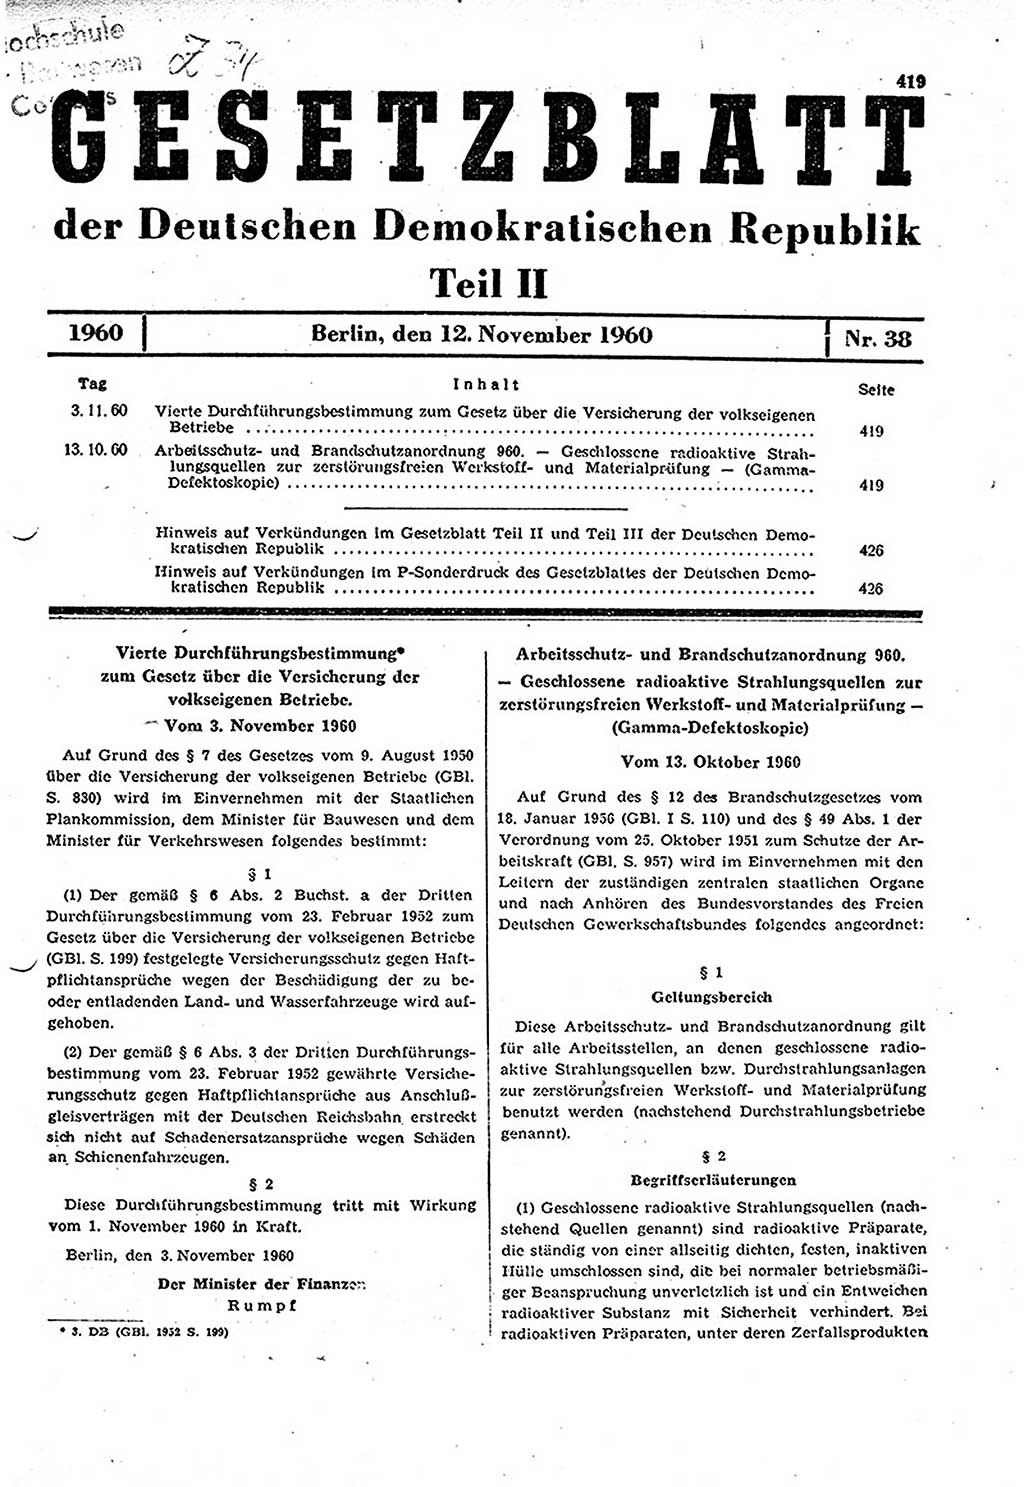 Gesetzblatt (GBl.) der Deutschen Demokratischen Republik (DDR) Teil ⅠⅠ 1960, Seite 419 (GBl. DDR ⅠⅠ 1960, S. 419)